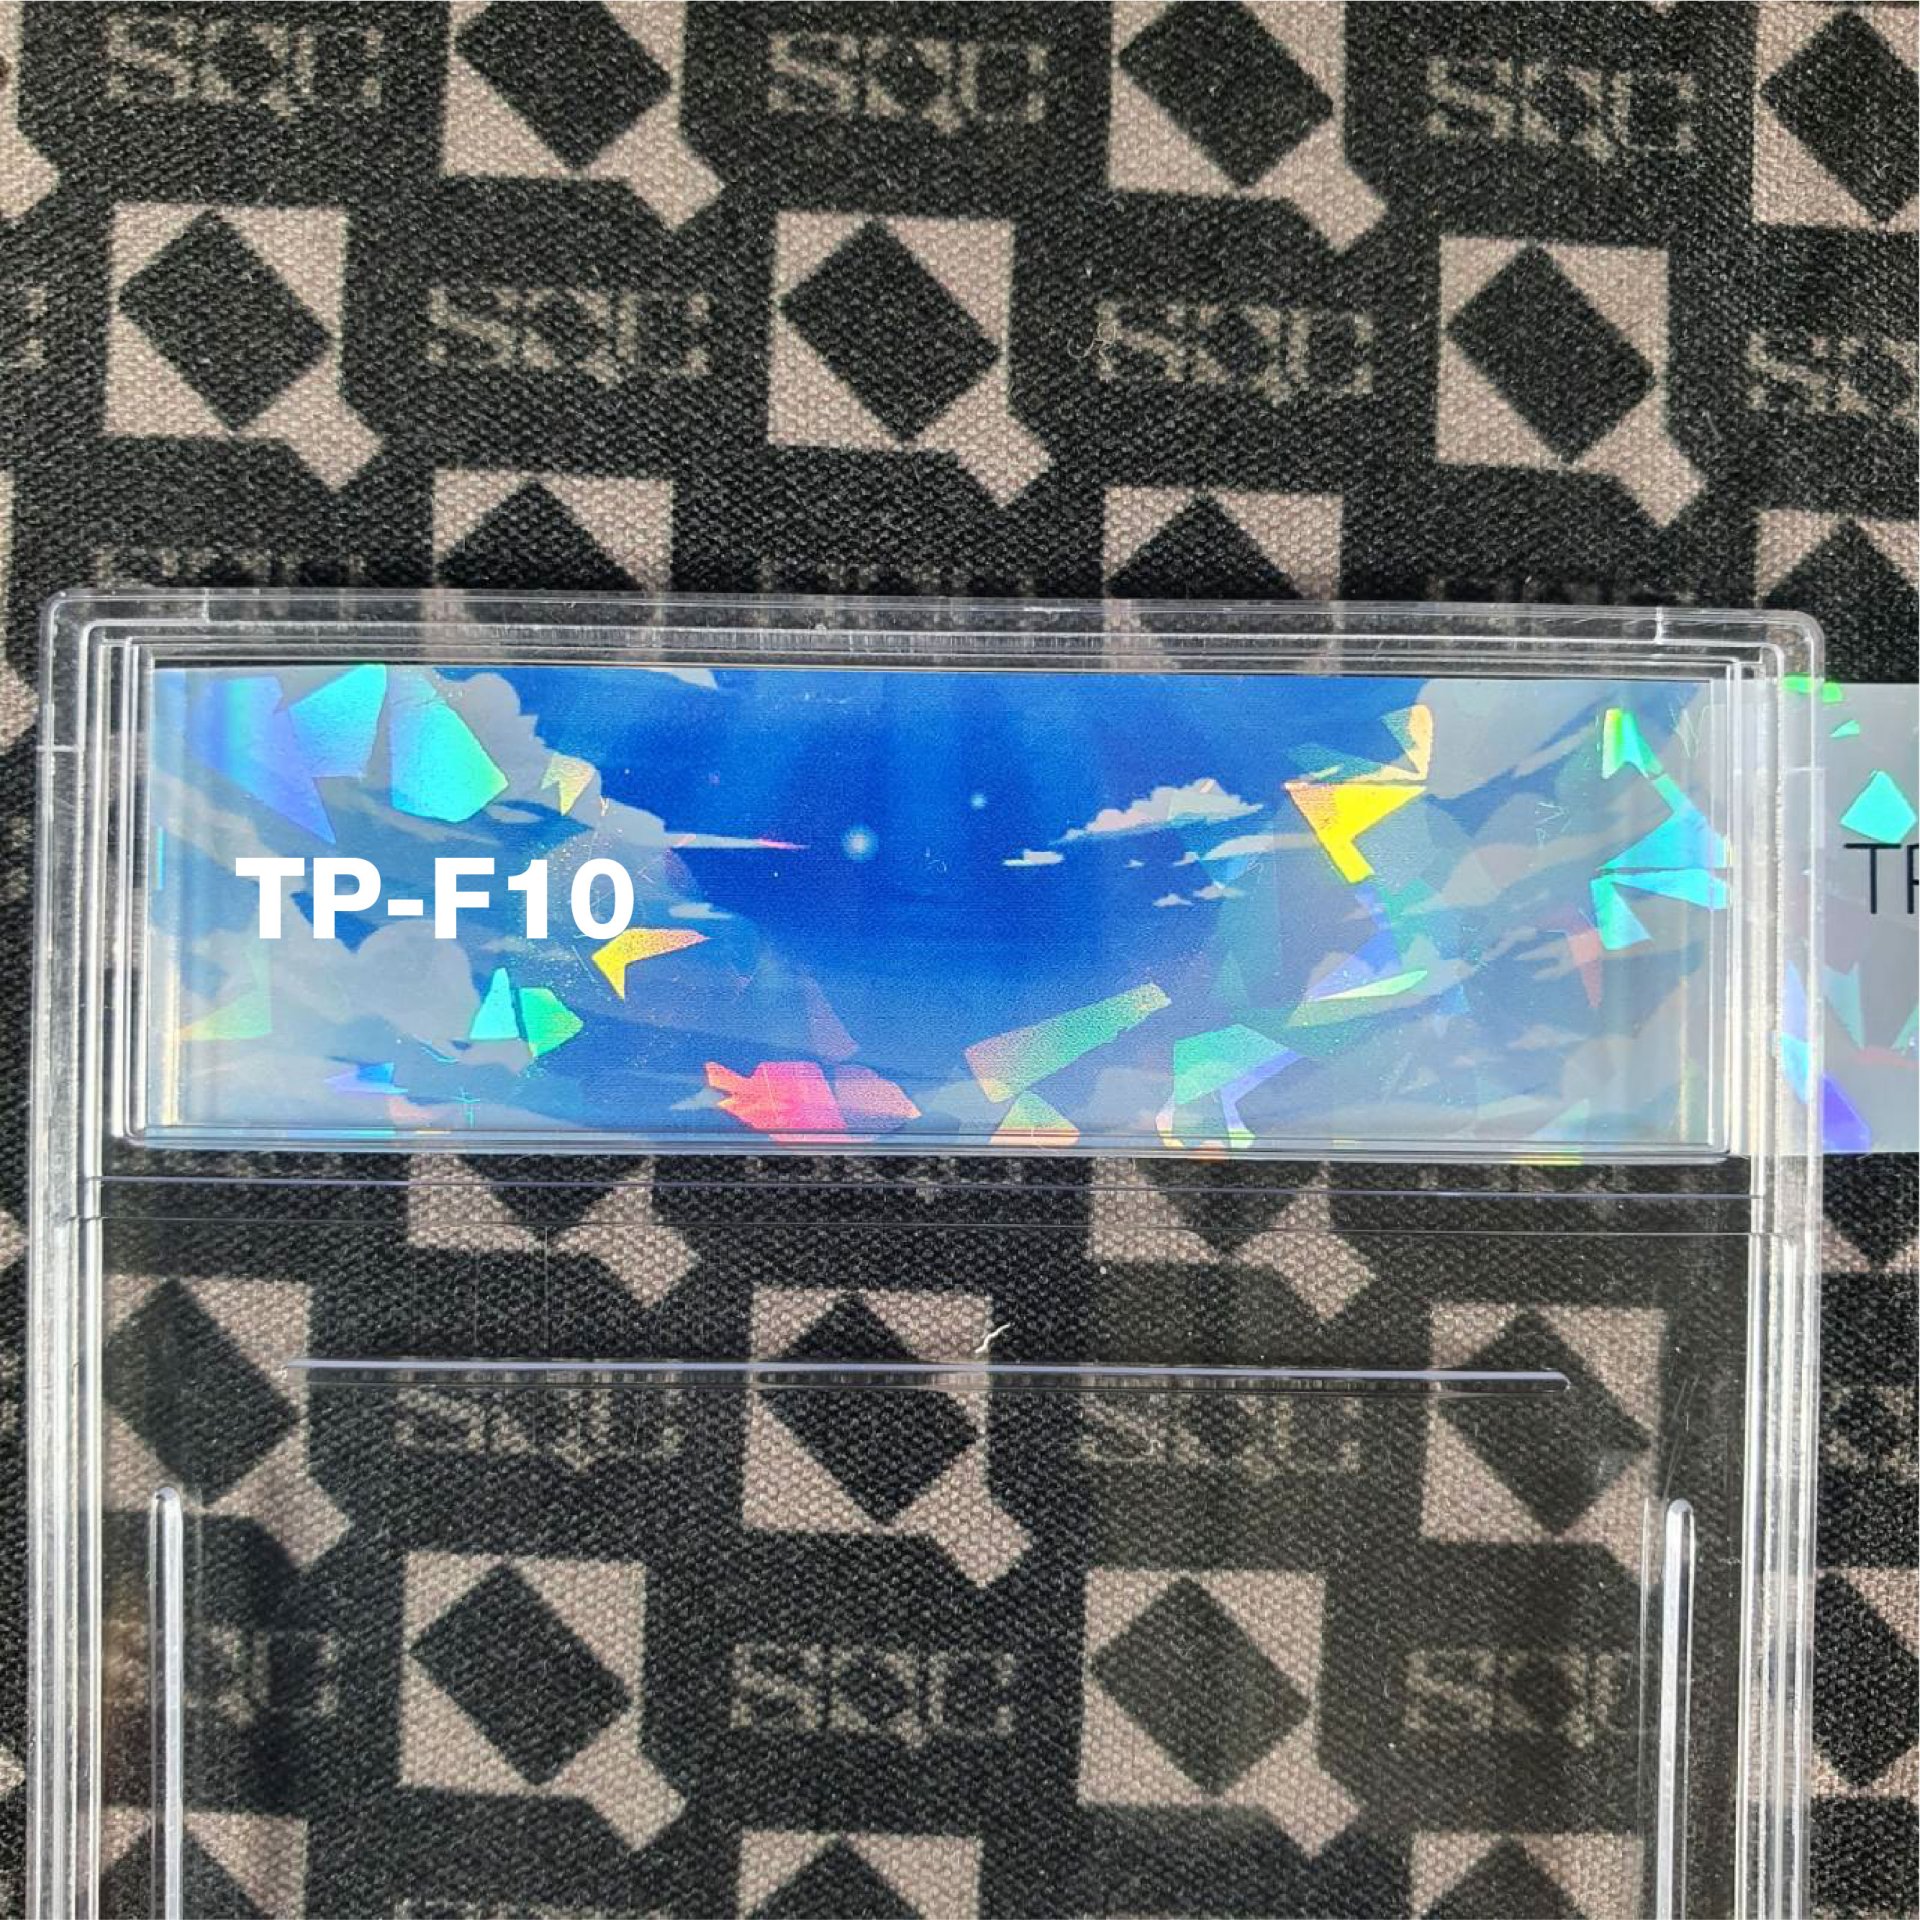 TP-F10